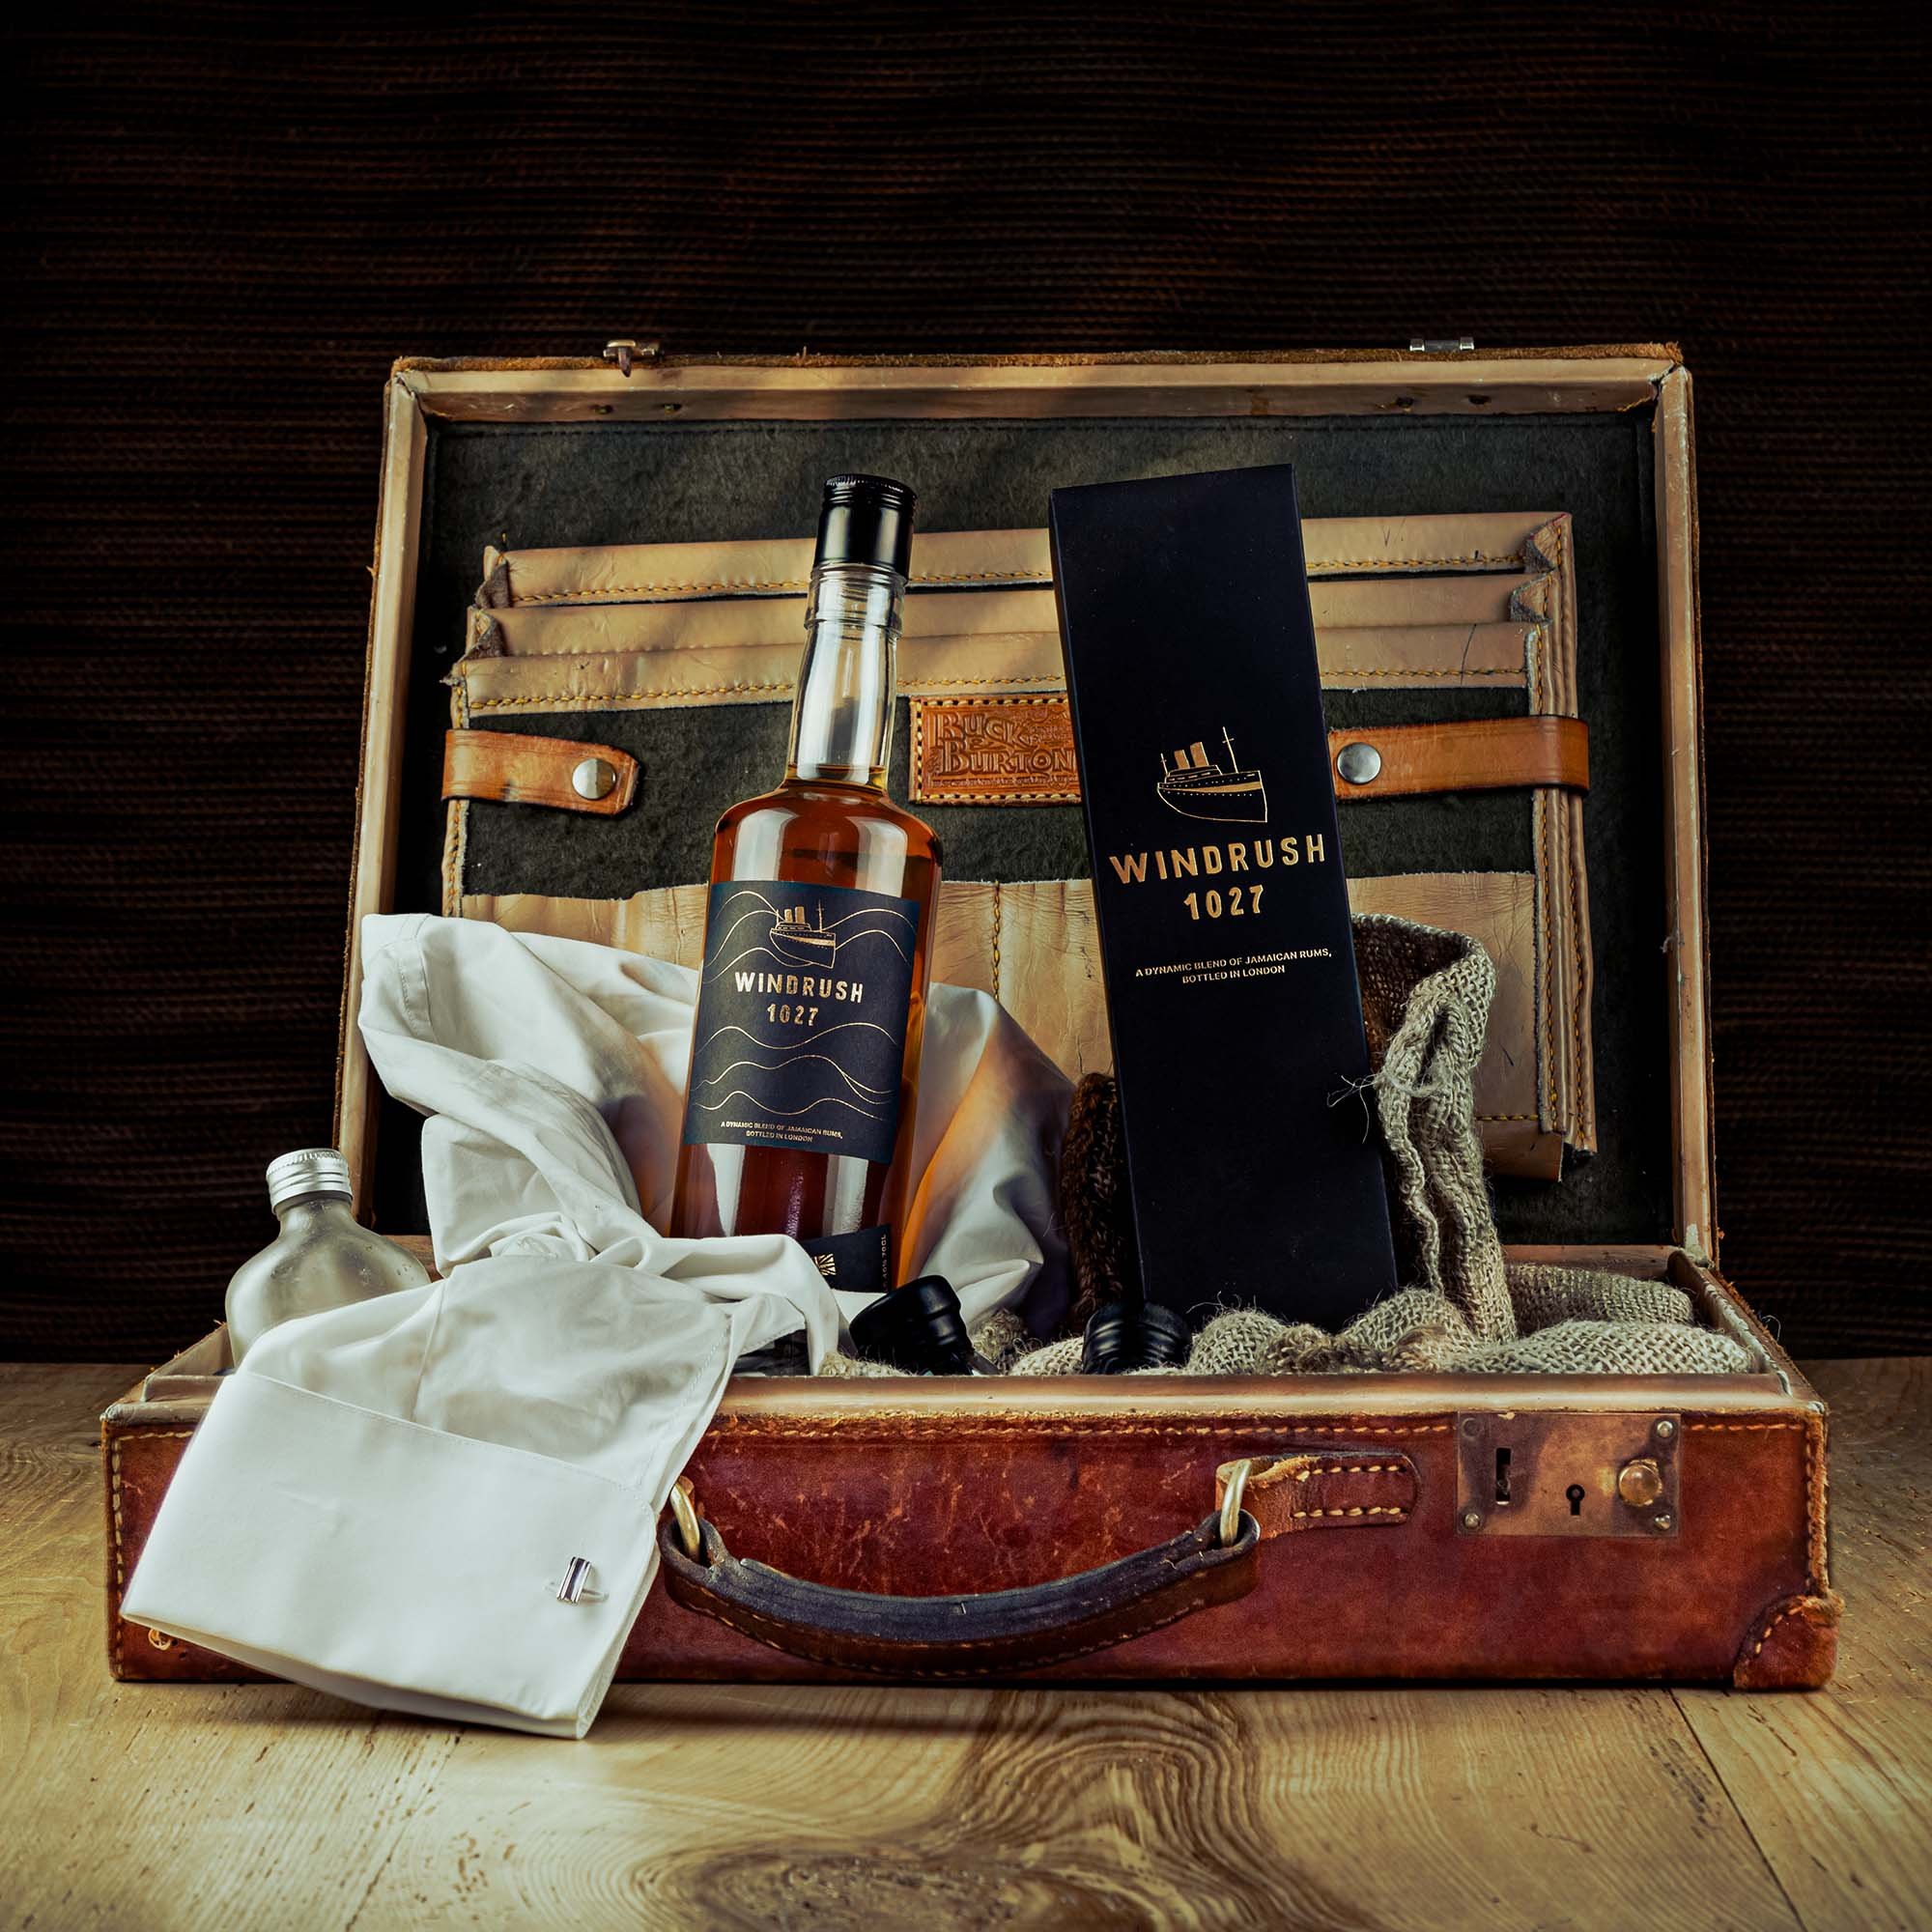 Windrush-London-Rum-Black-Gold-CC-Hybrid-Bottle-Box-UK-Packaging.jpg